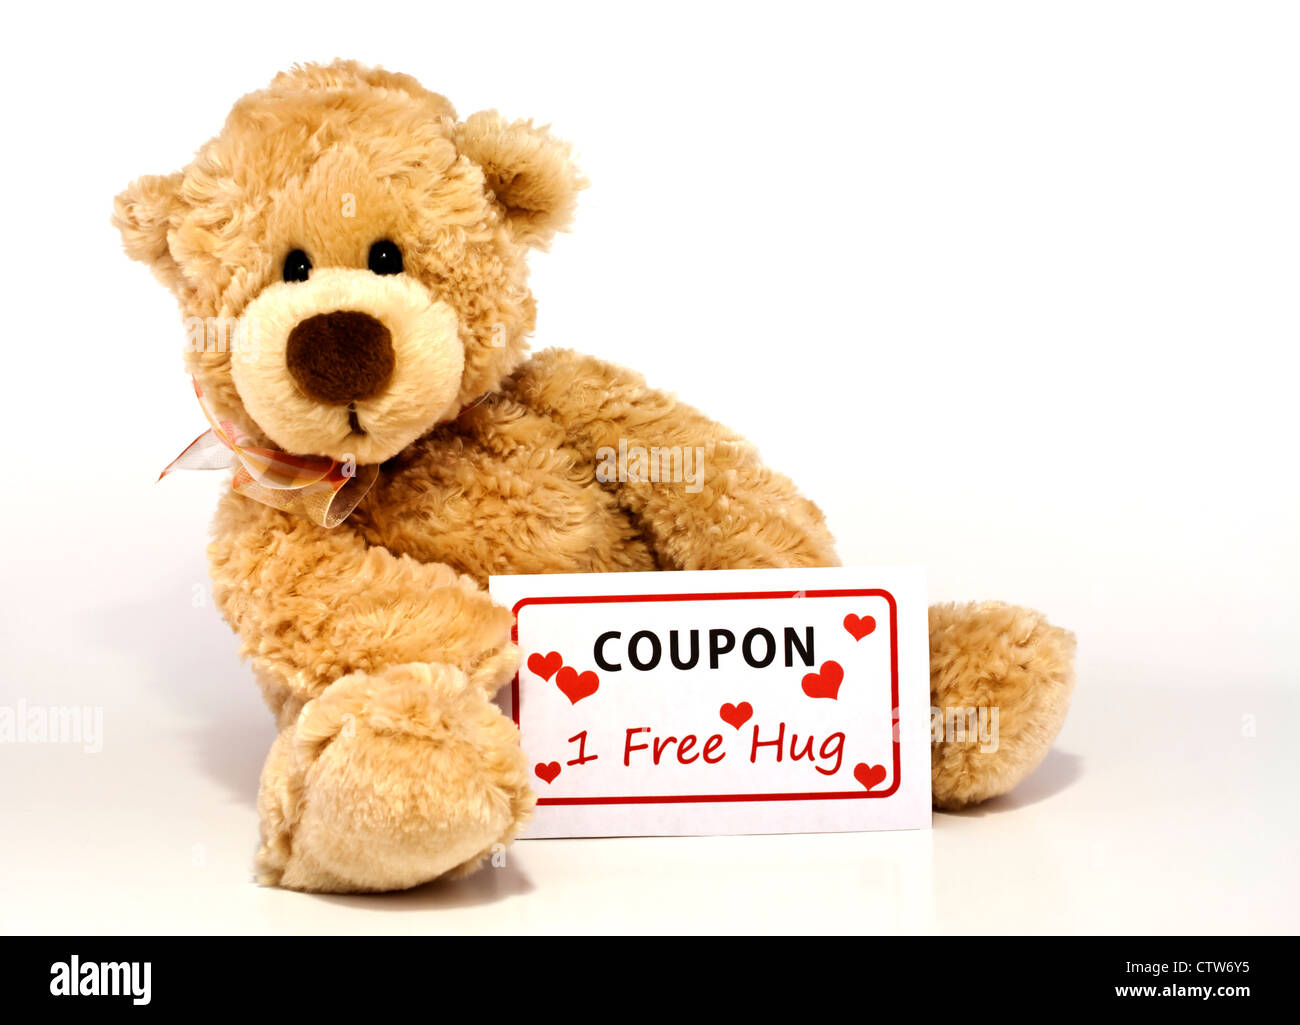 Carino marrone peloso orsacchiotto seduto e in possesso di un coupon per uno gratis abbraccio isolato su sfondo bianco con copia spazio. Foto Stock